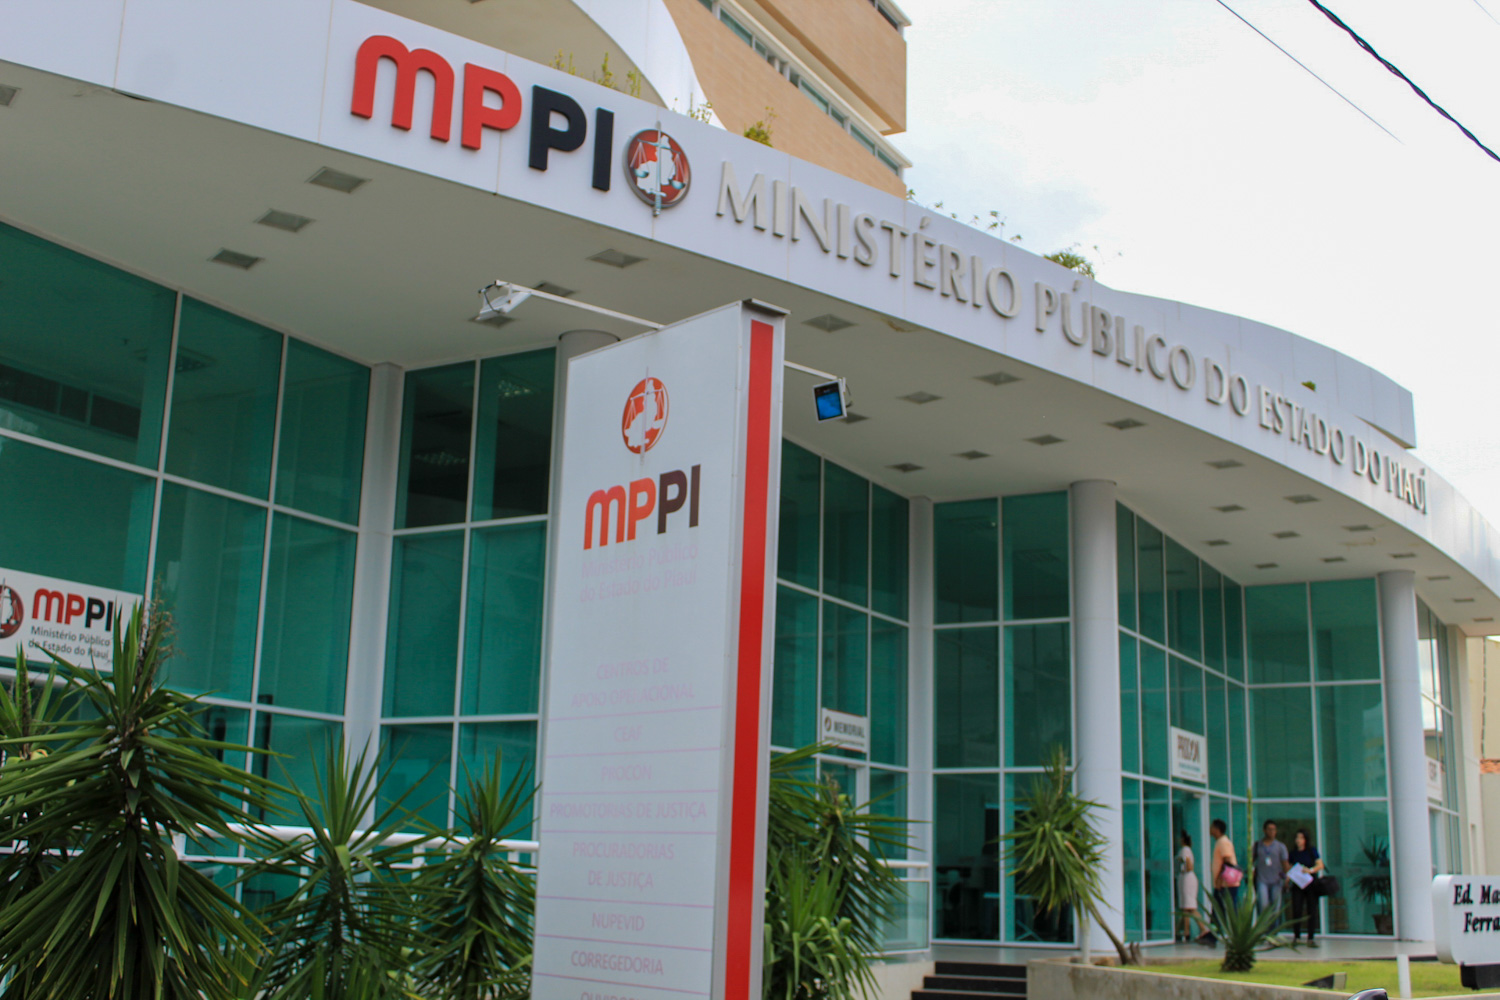 Ministério Público do Piauí.